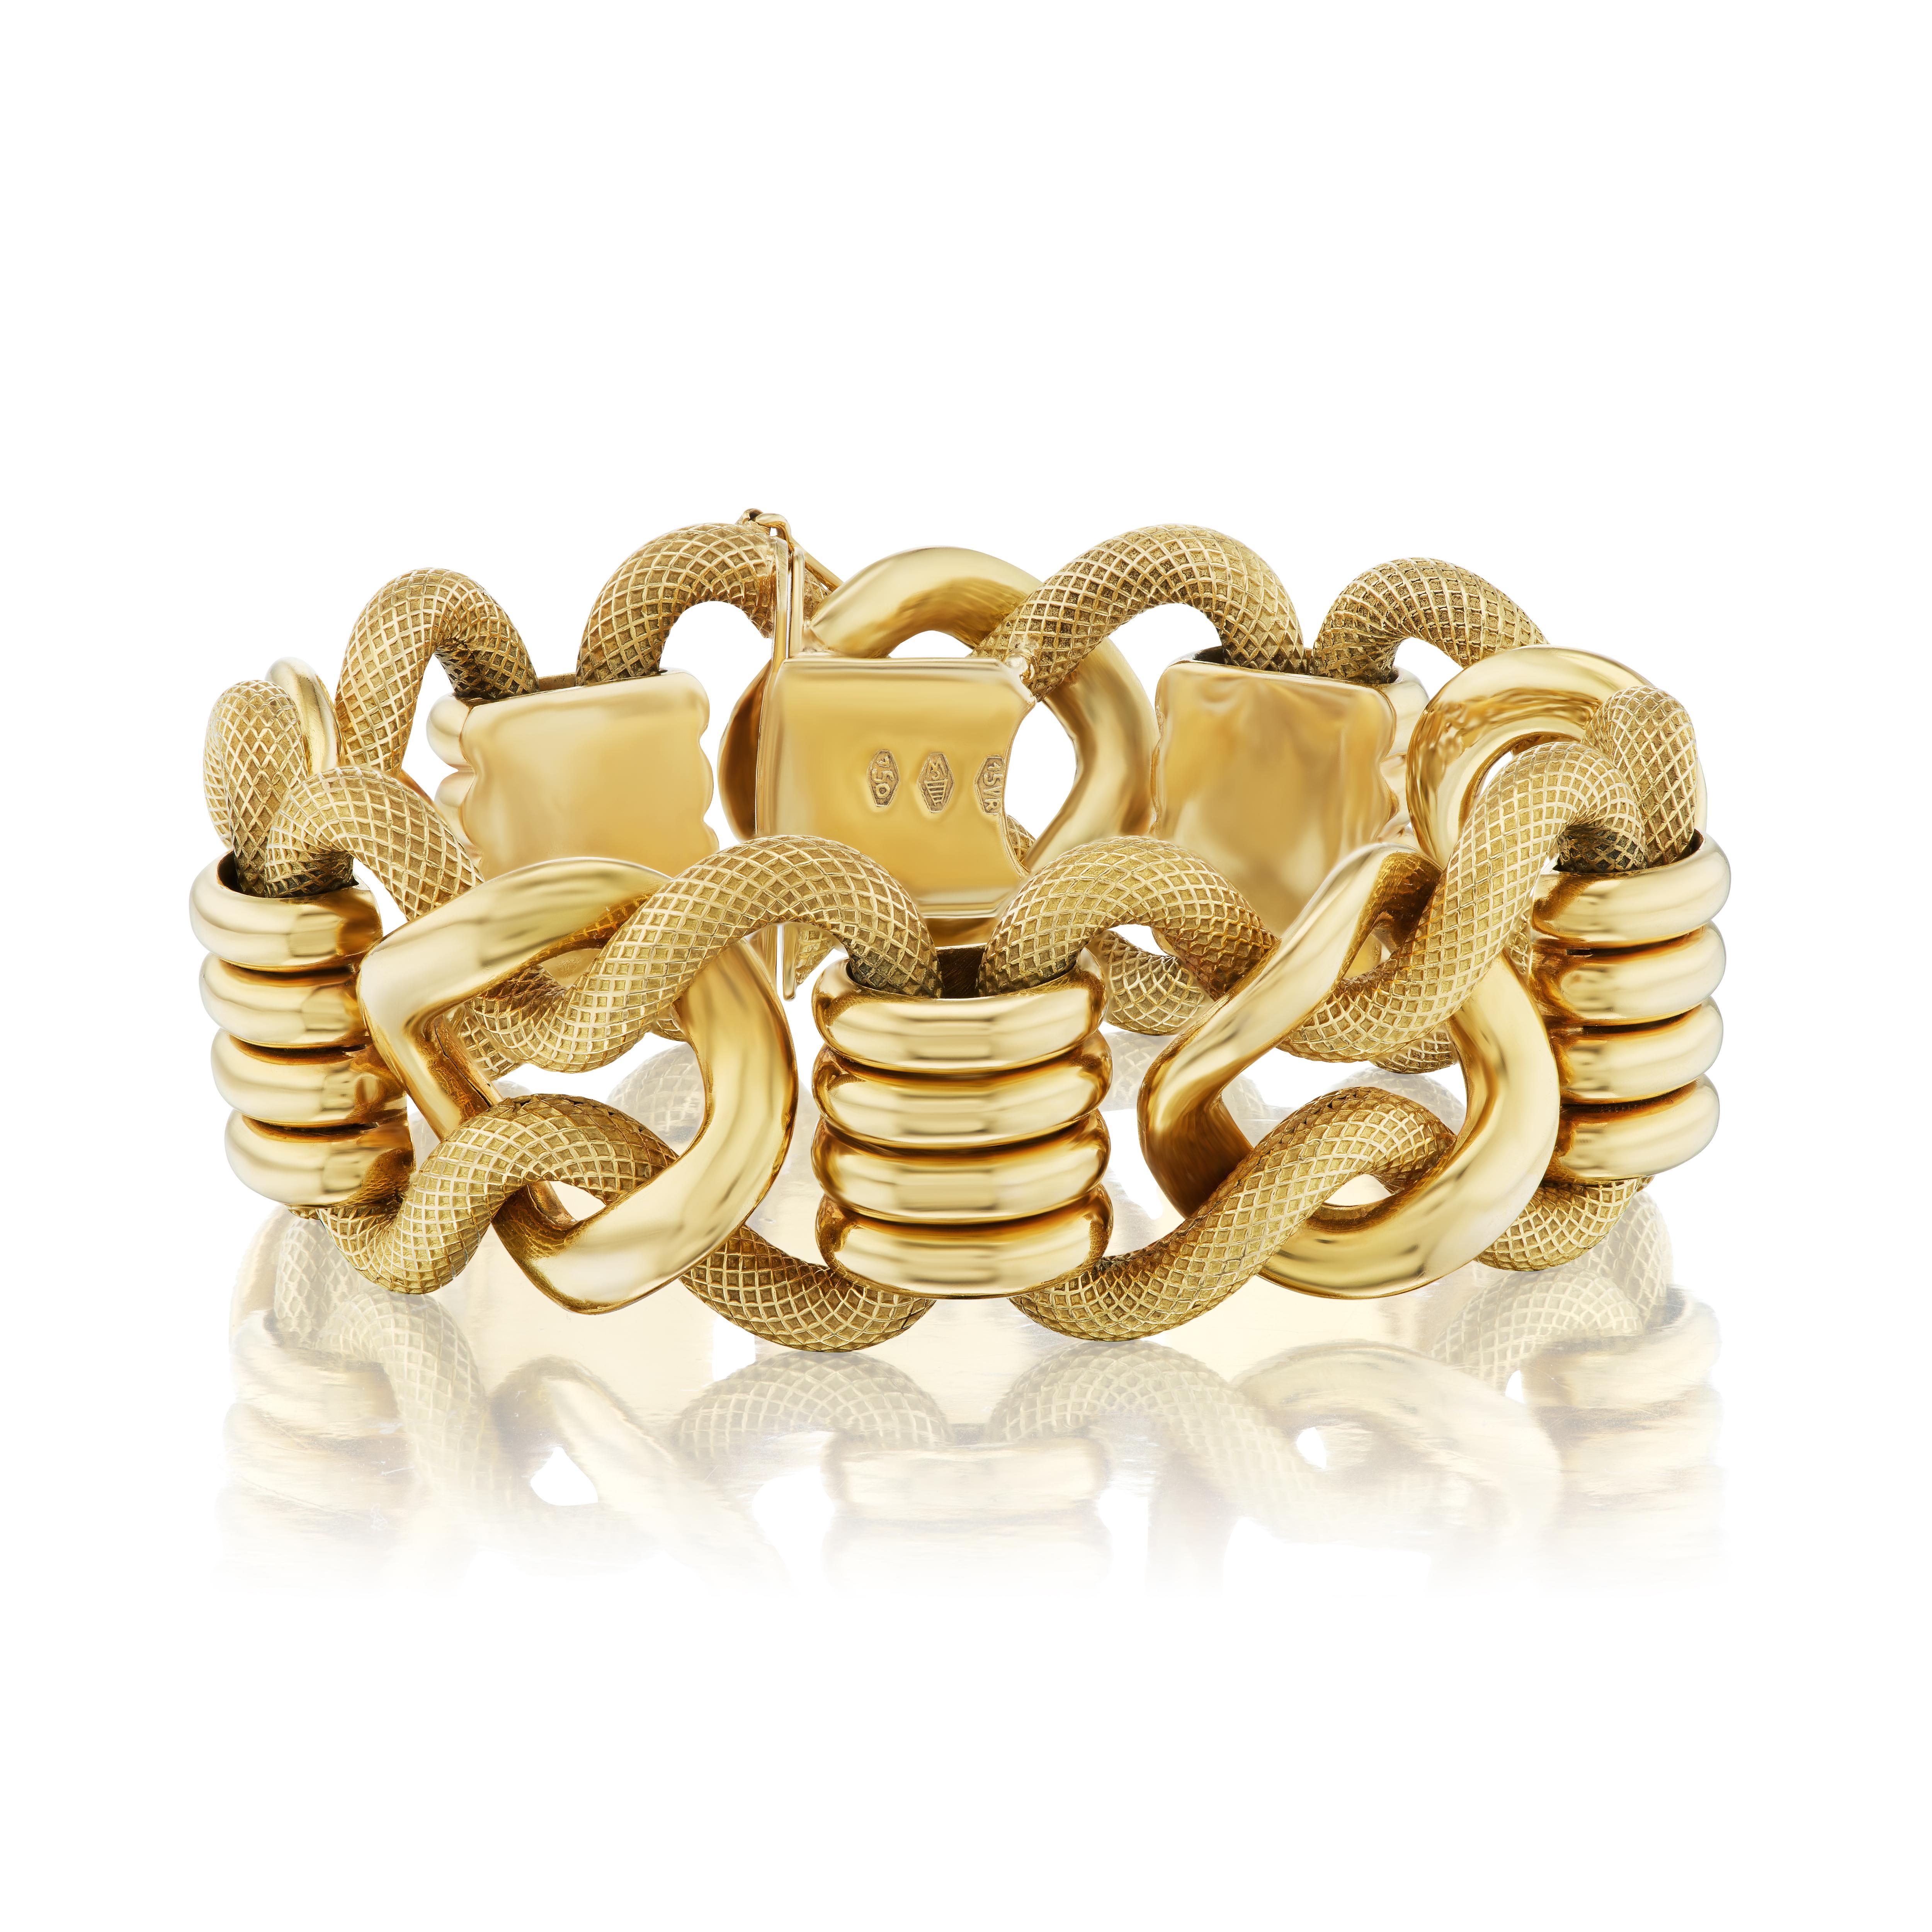 La société Carlo Weingrill remonte aux années 1800 et est bien connue pour ses magnifiques bijoux en or faits à la main.  Leur atelier d'origine de Vérone, en Italie, a produit des pièces sous leur propre nom, ainsi que pour des marques telles que